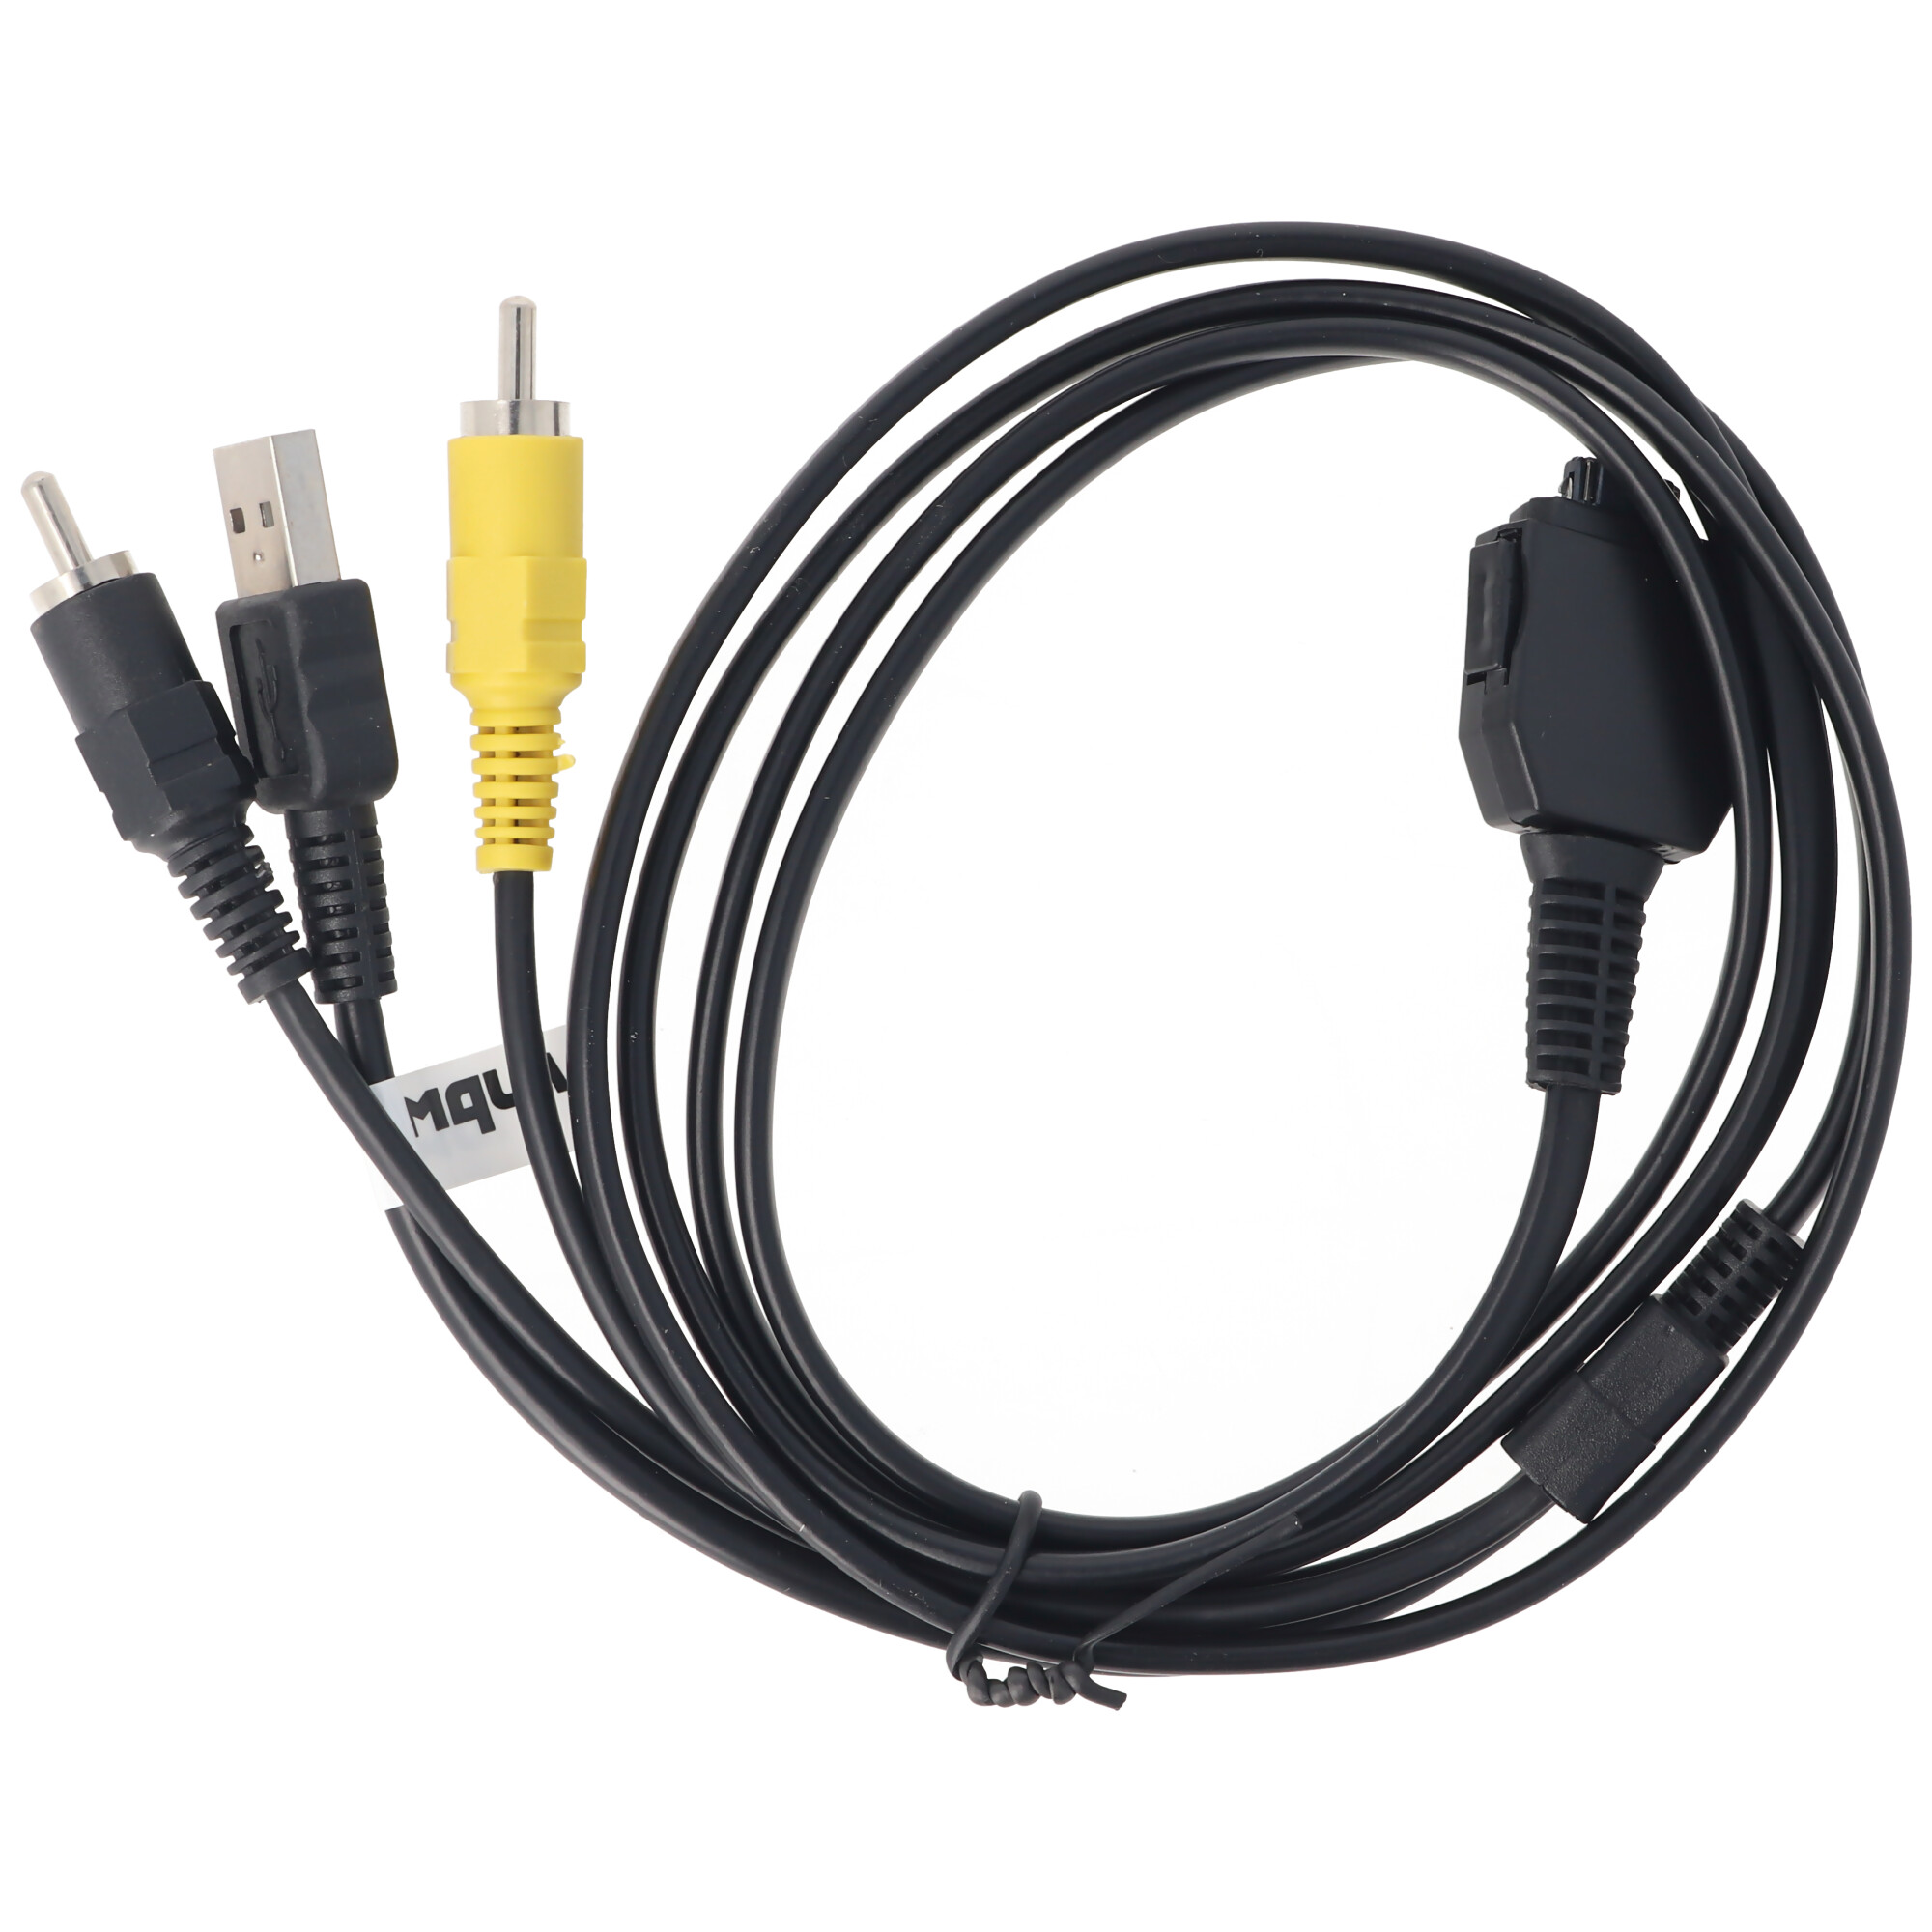 USB Daten kabel für Sony Cybershot DSC-W110 W90 W85 